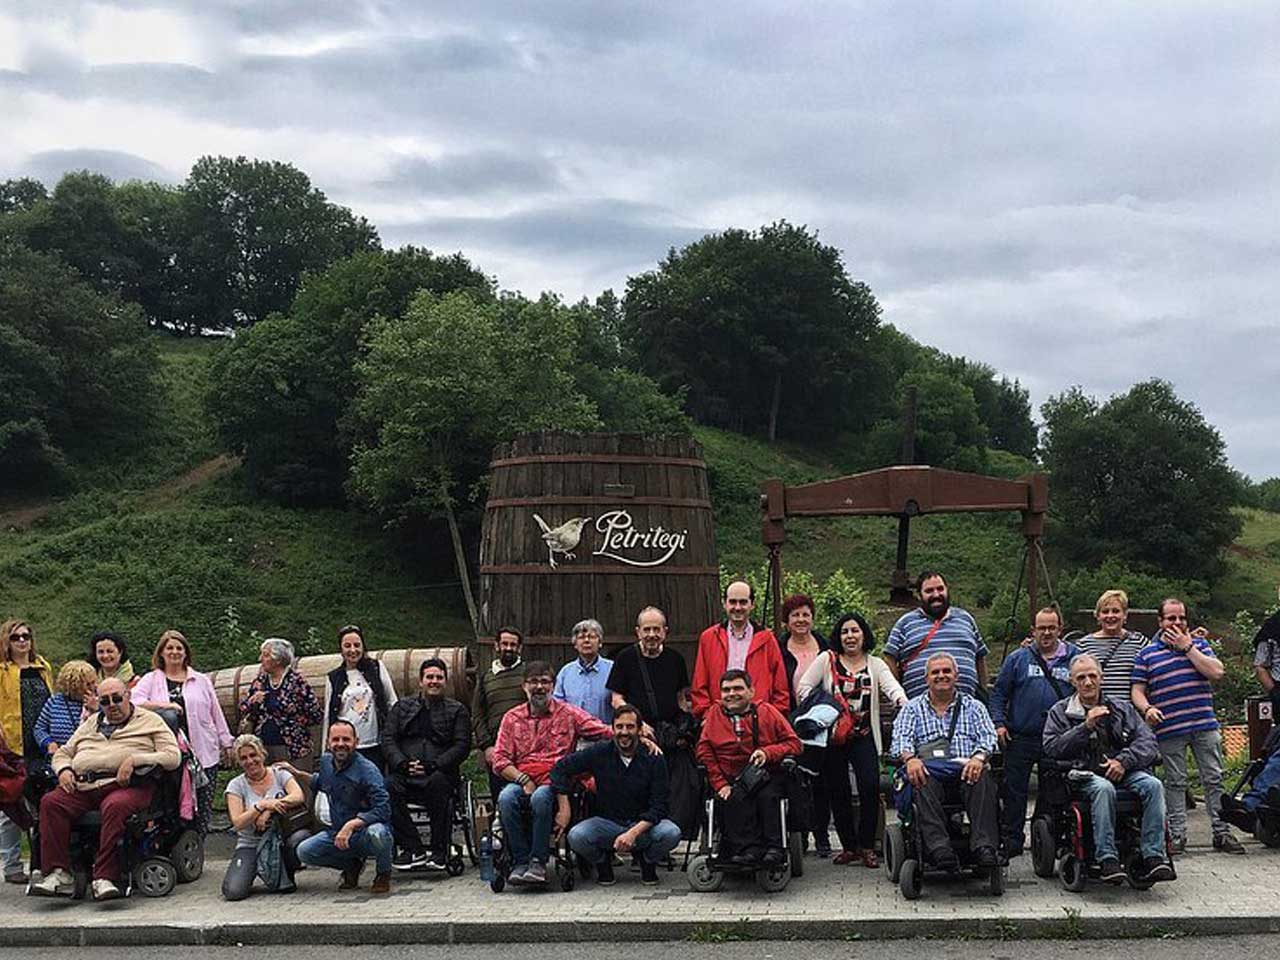 Grupo de personas en la sidrería Petritegi, algunas de ellas usuarias de silla de ruedas.